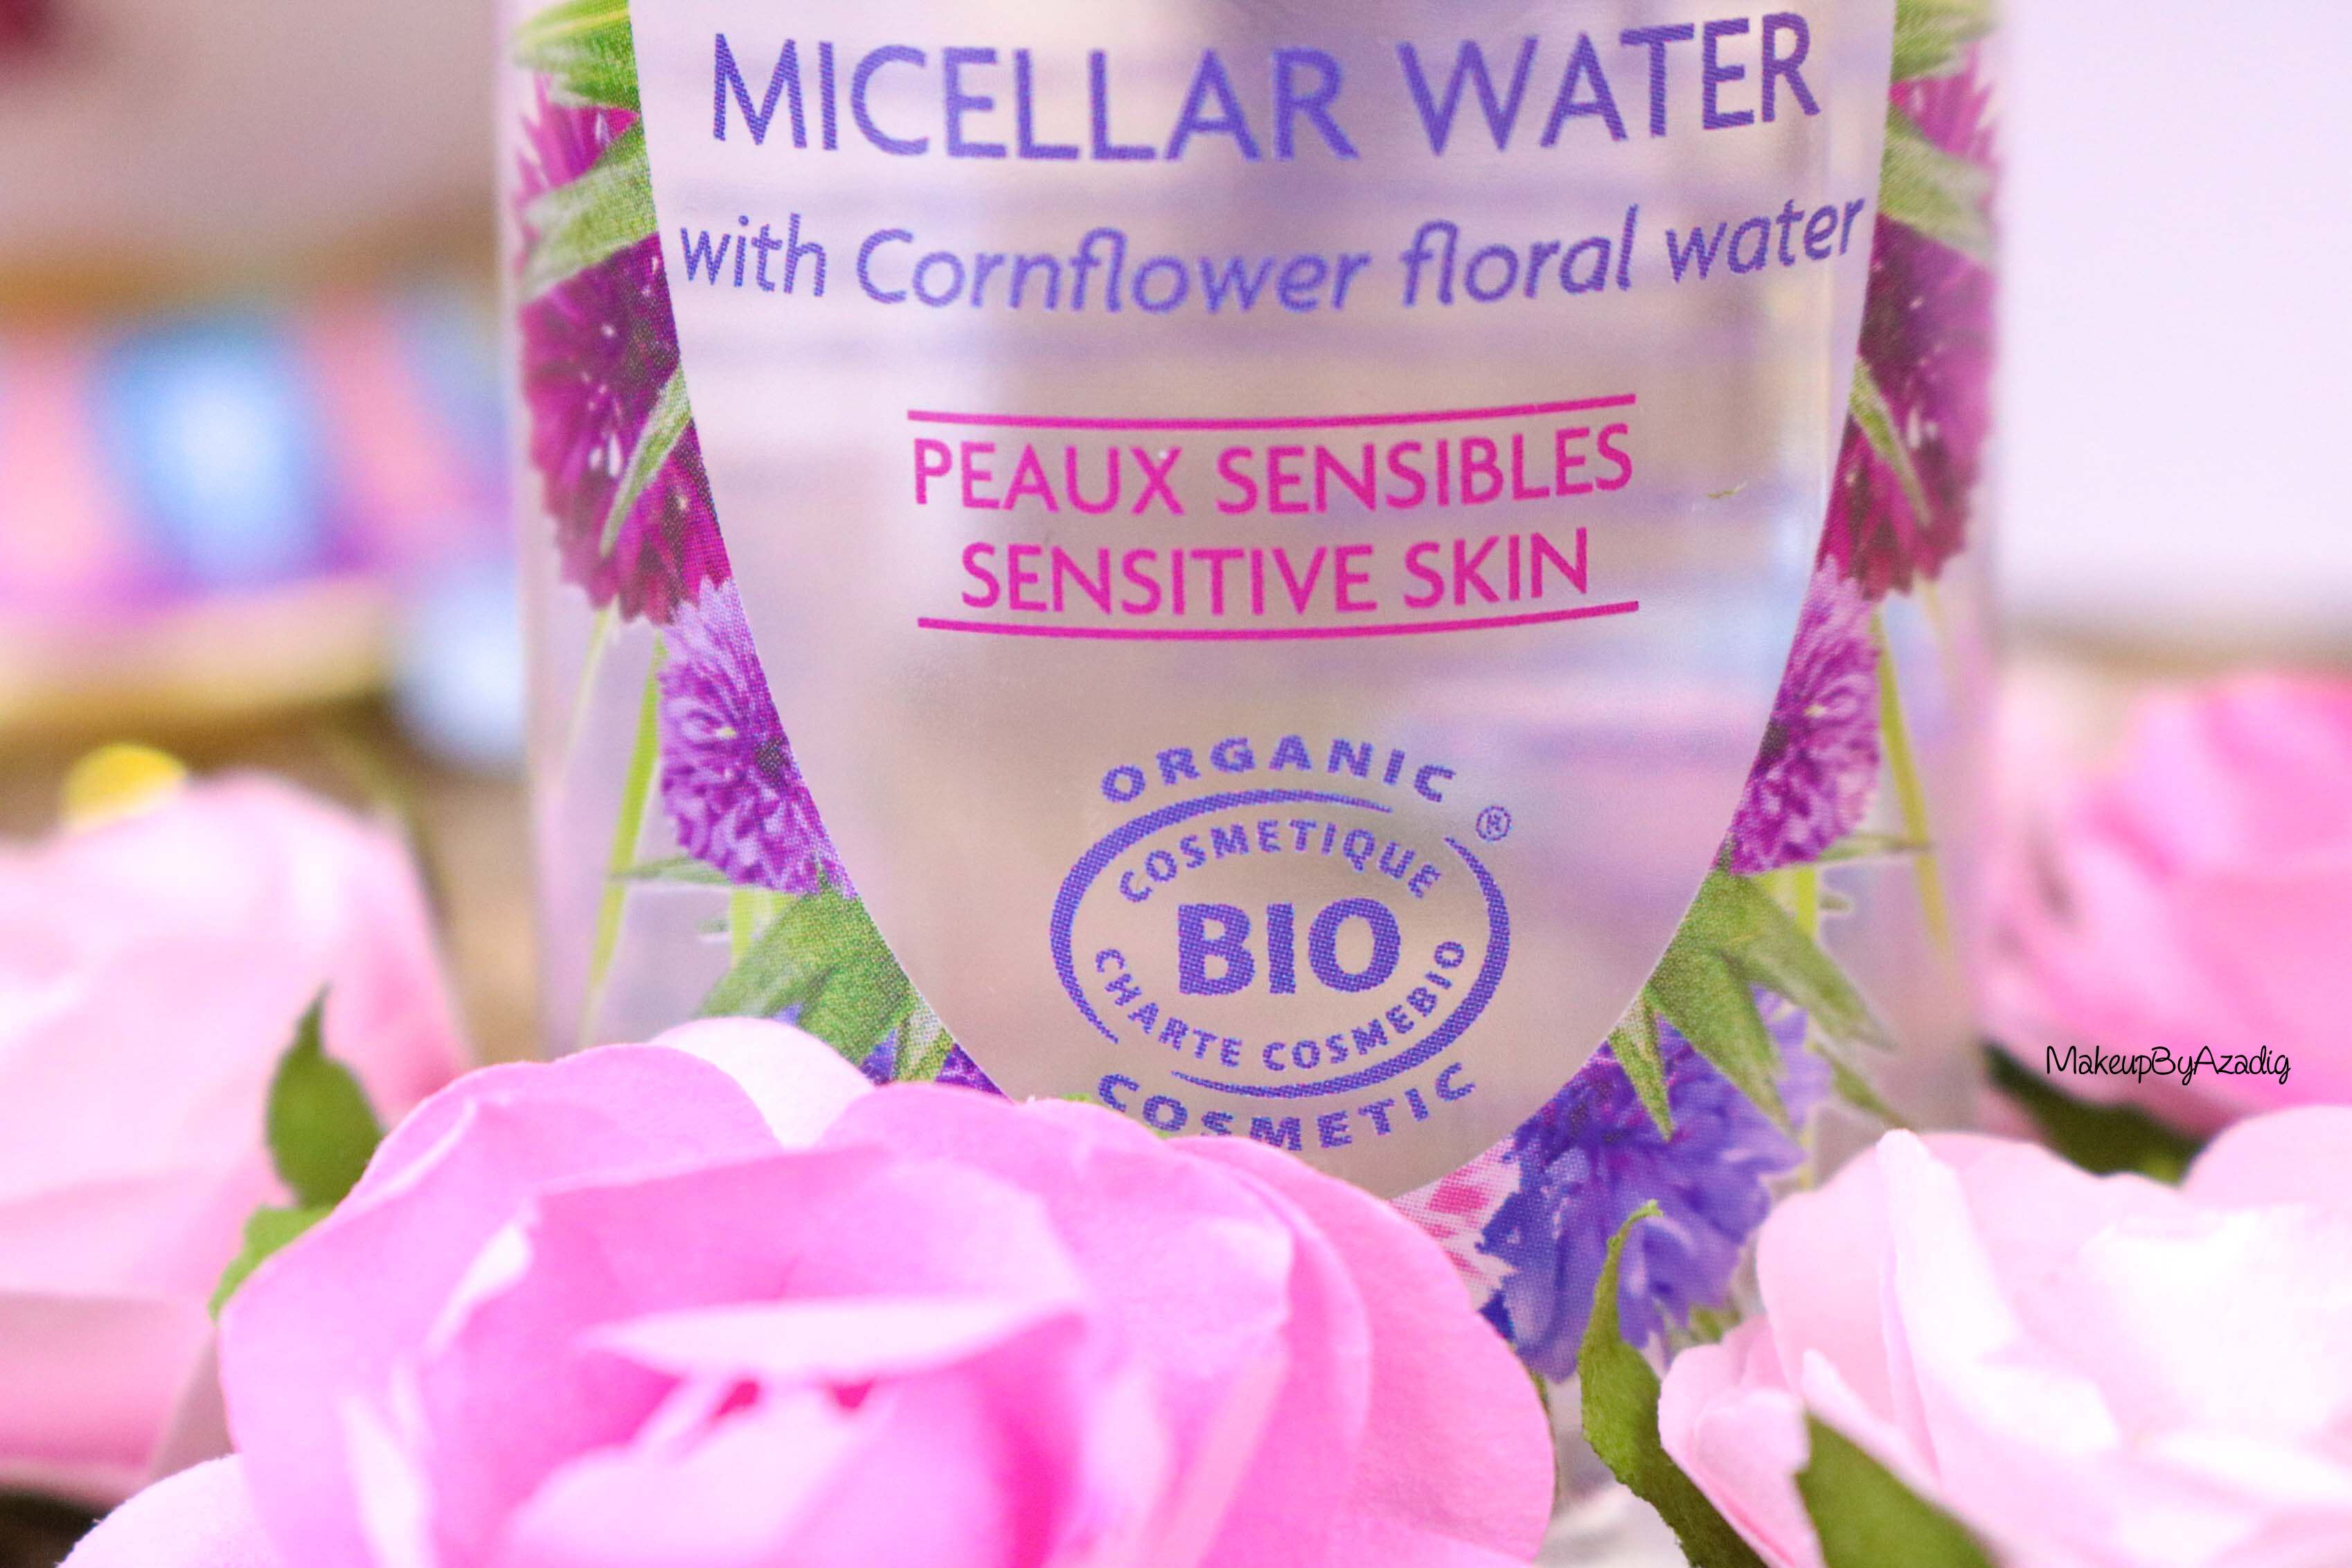 revue-eau-micellaire-peau-sensible-cosmetique-bio-fleurance-nature-makeupbyazadig-florale-bleuet-prix-avis-organic